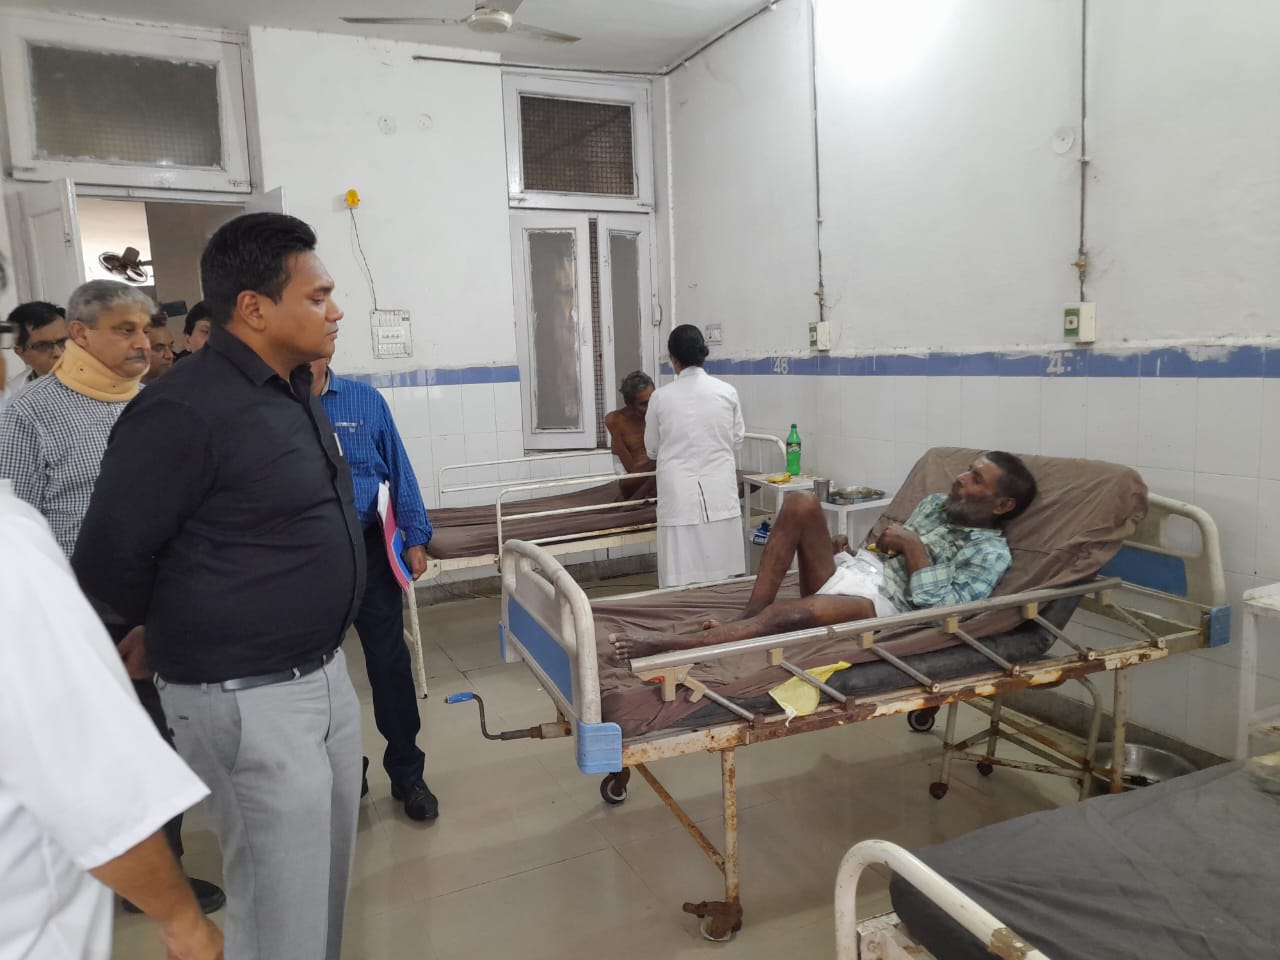 स्वास्थ्य सचिव ने किया हरिद्वार जिले का औचक निरीक्षण, डेंगू रोकथाम अभियान का लिया जायजा